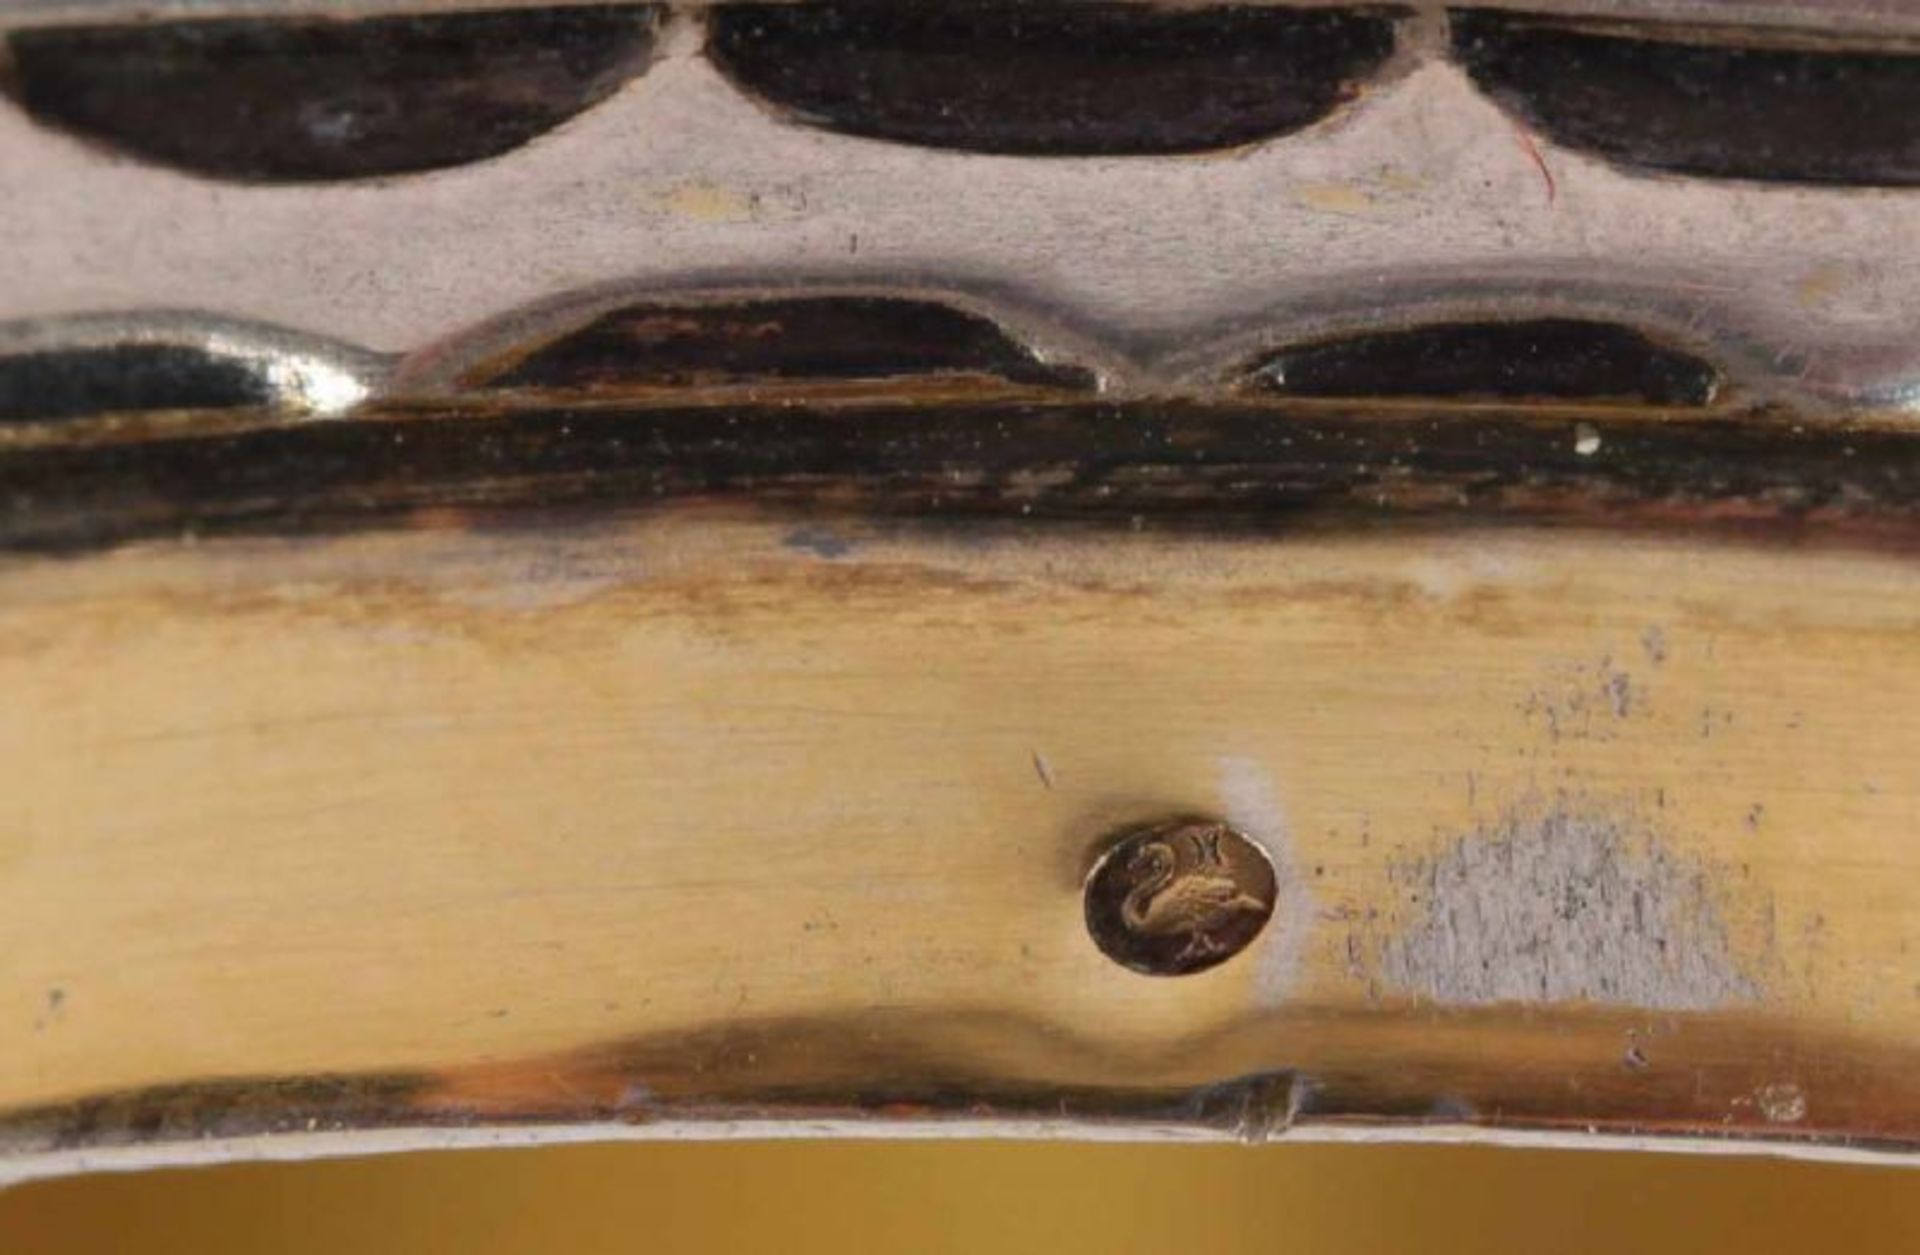 TABATIÈRE, 800/ooo, innen vergoldet, allseitiges Reliefdekor, L 7, 105g, französische Importmarke, - Bild 4 aus 5